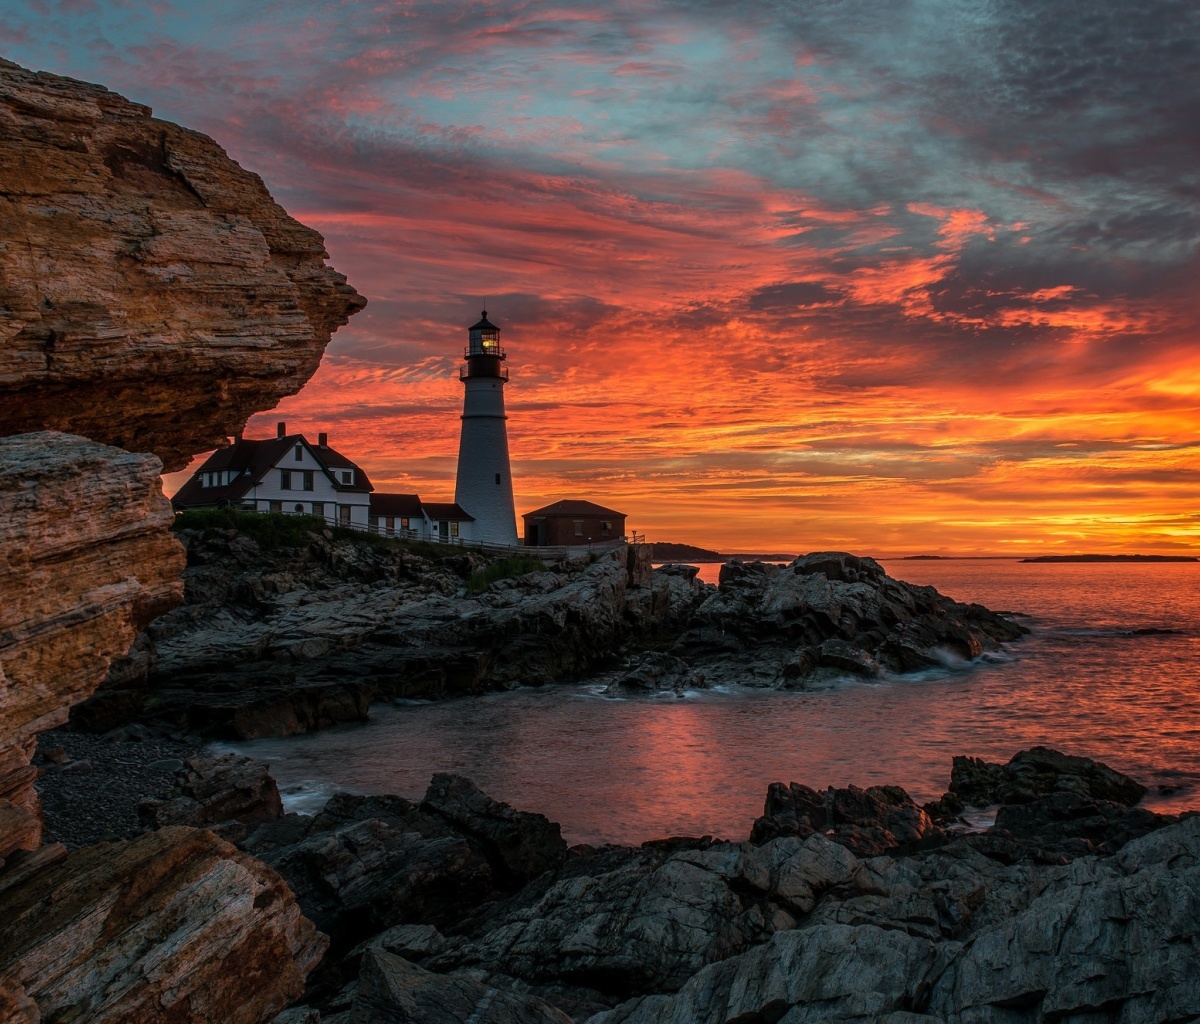 Обои Sunset and lighthouse 1200x1024